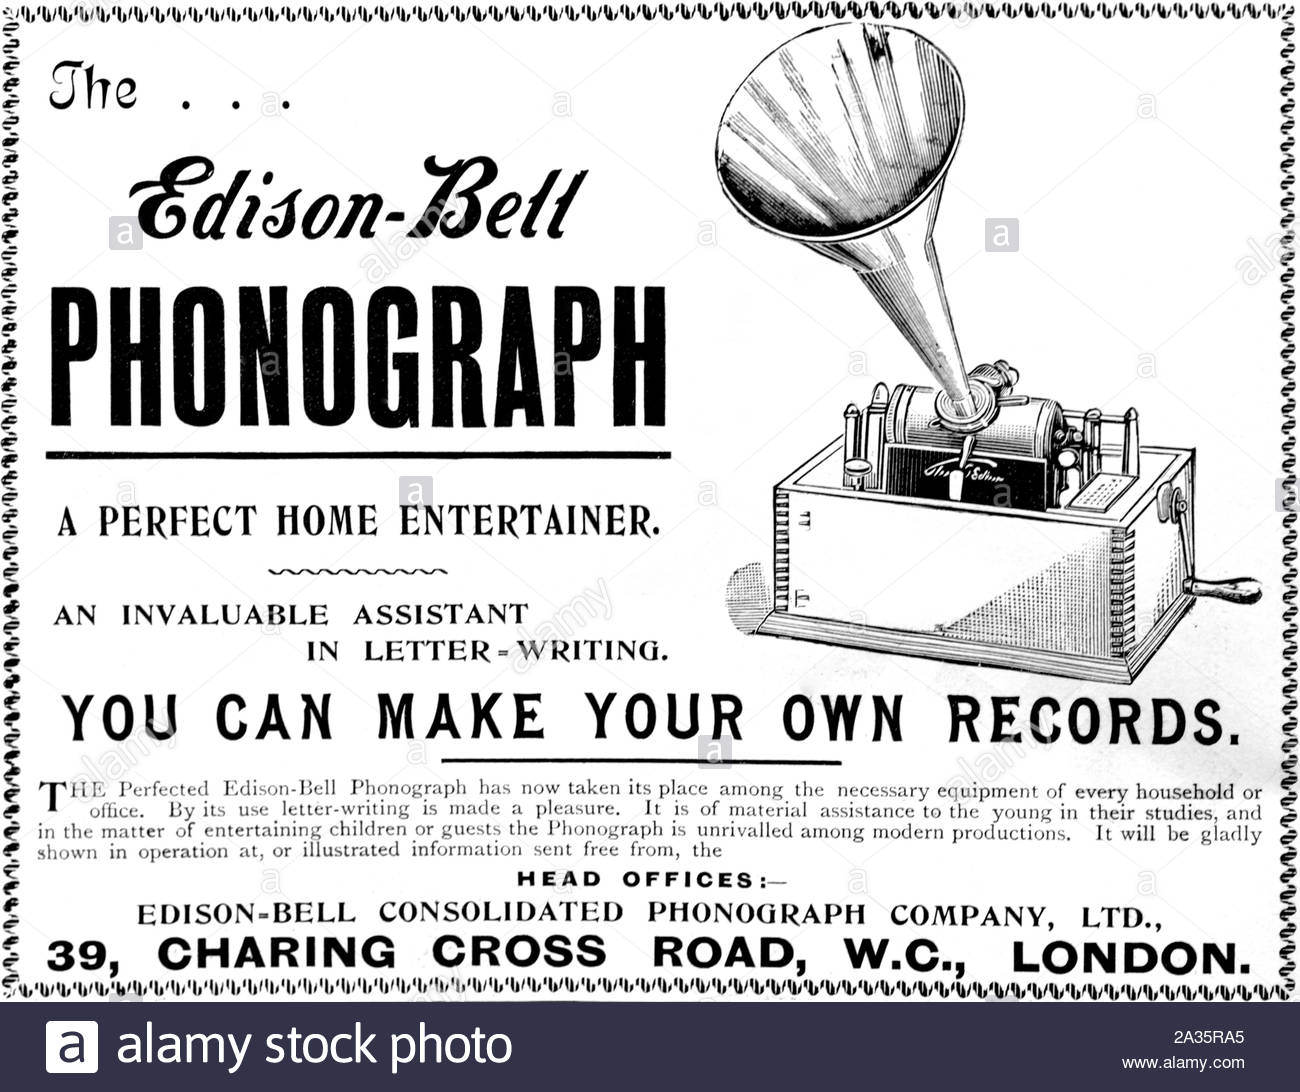 L'époque victorienne, phonographe Edison-Bell, vintage advertising à partir de 1899 Banque D'Images